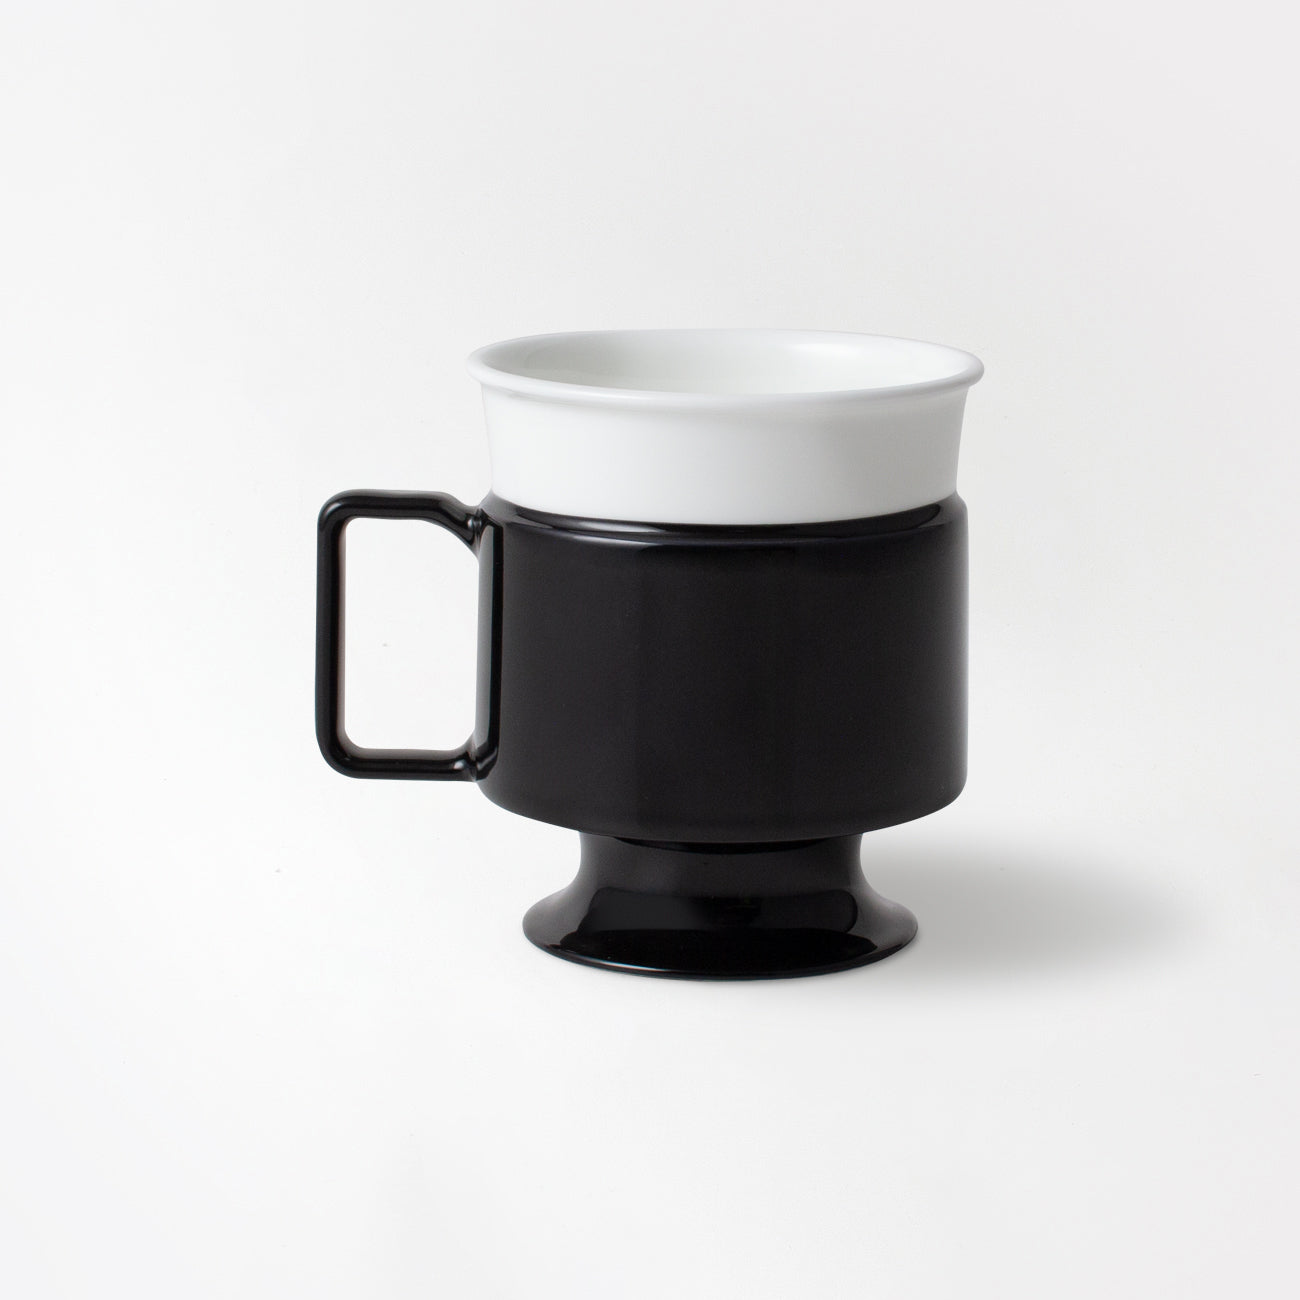 【復興支援商品】#Single use Planet cup (ブラック)